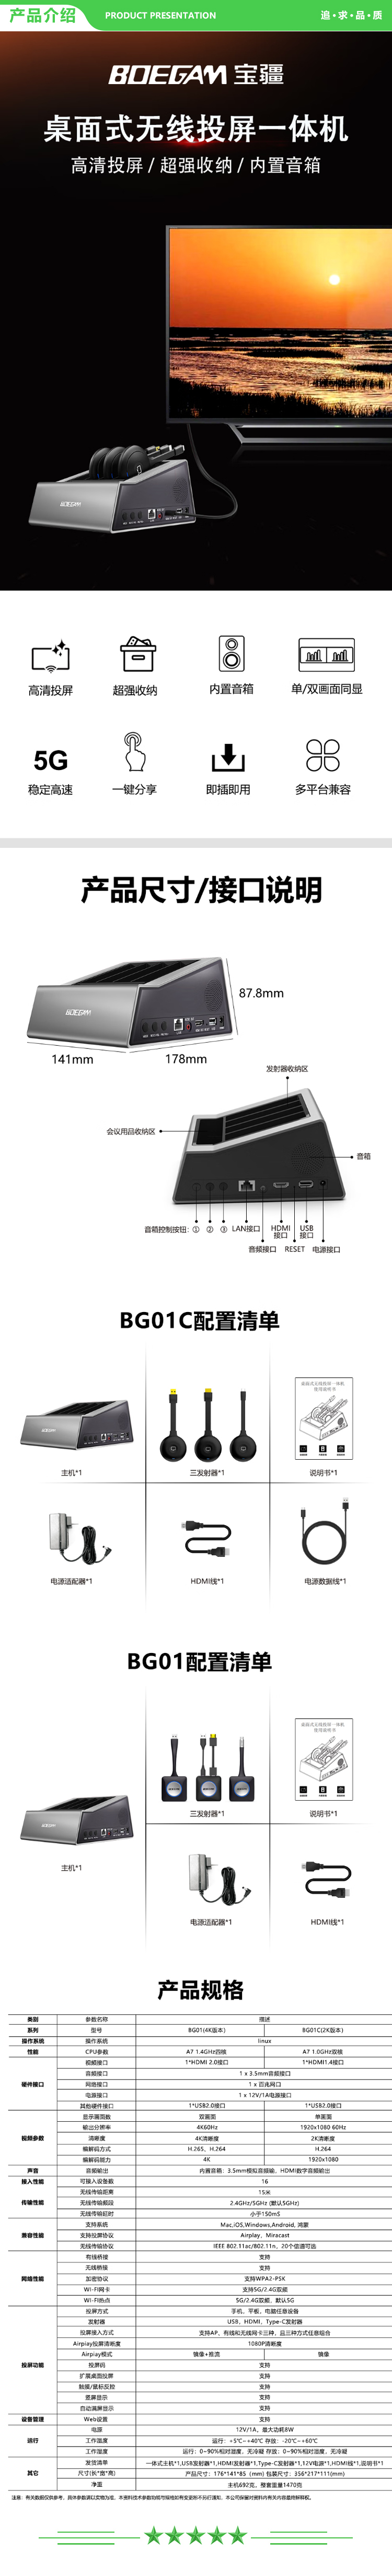 宝疆 BOEGAM BG01C 三发射器套装 桌面式无线投屏一体机电视大屏投影机配套使用手机平板电脑带蓝牙音箱 2.jpg